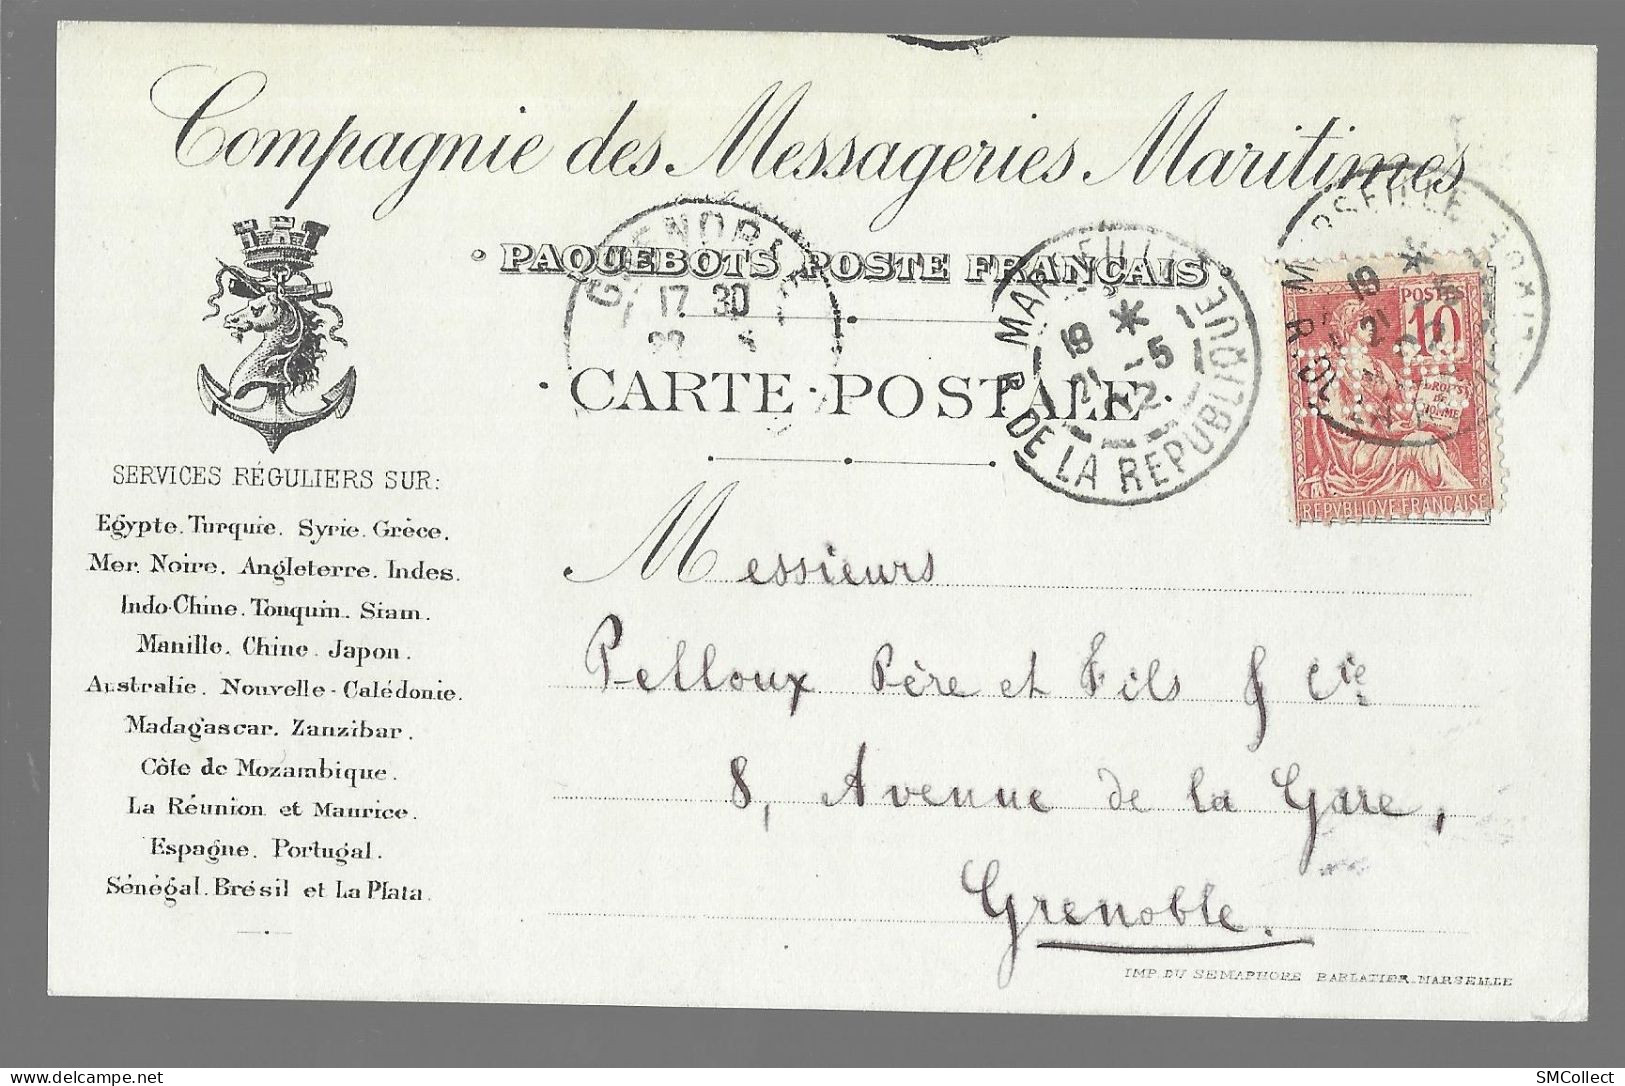 Carte Postale De La Compagnie Des Messageries Maritime, Paquebots Poste Français (13649) - Piroscafi